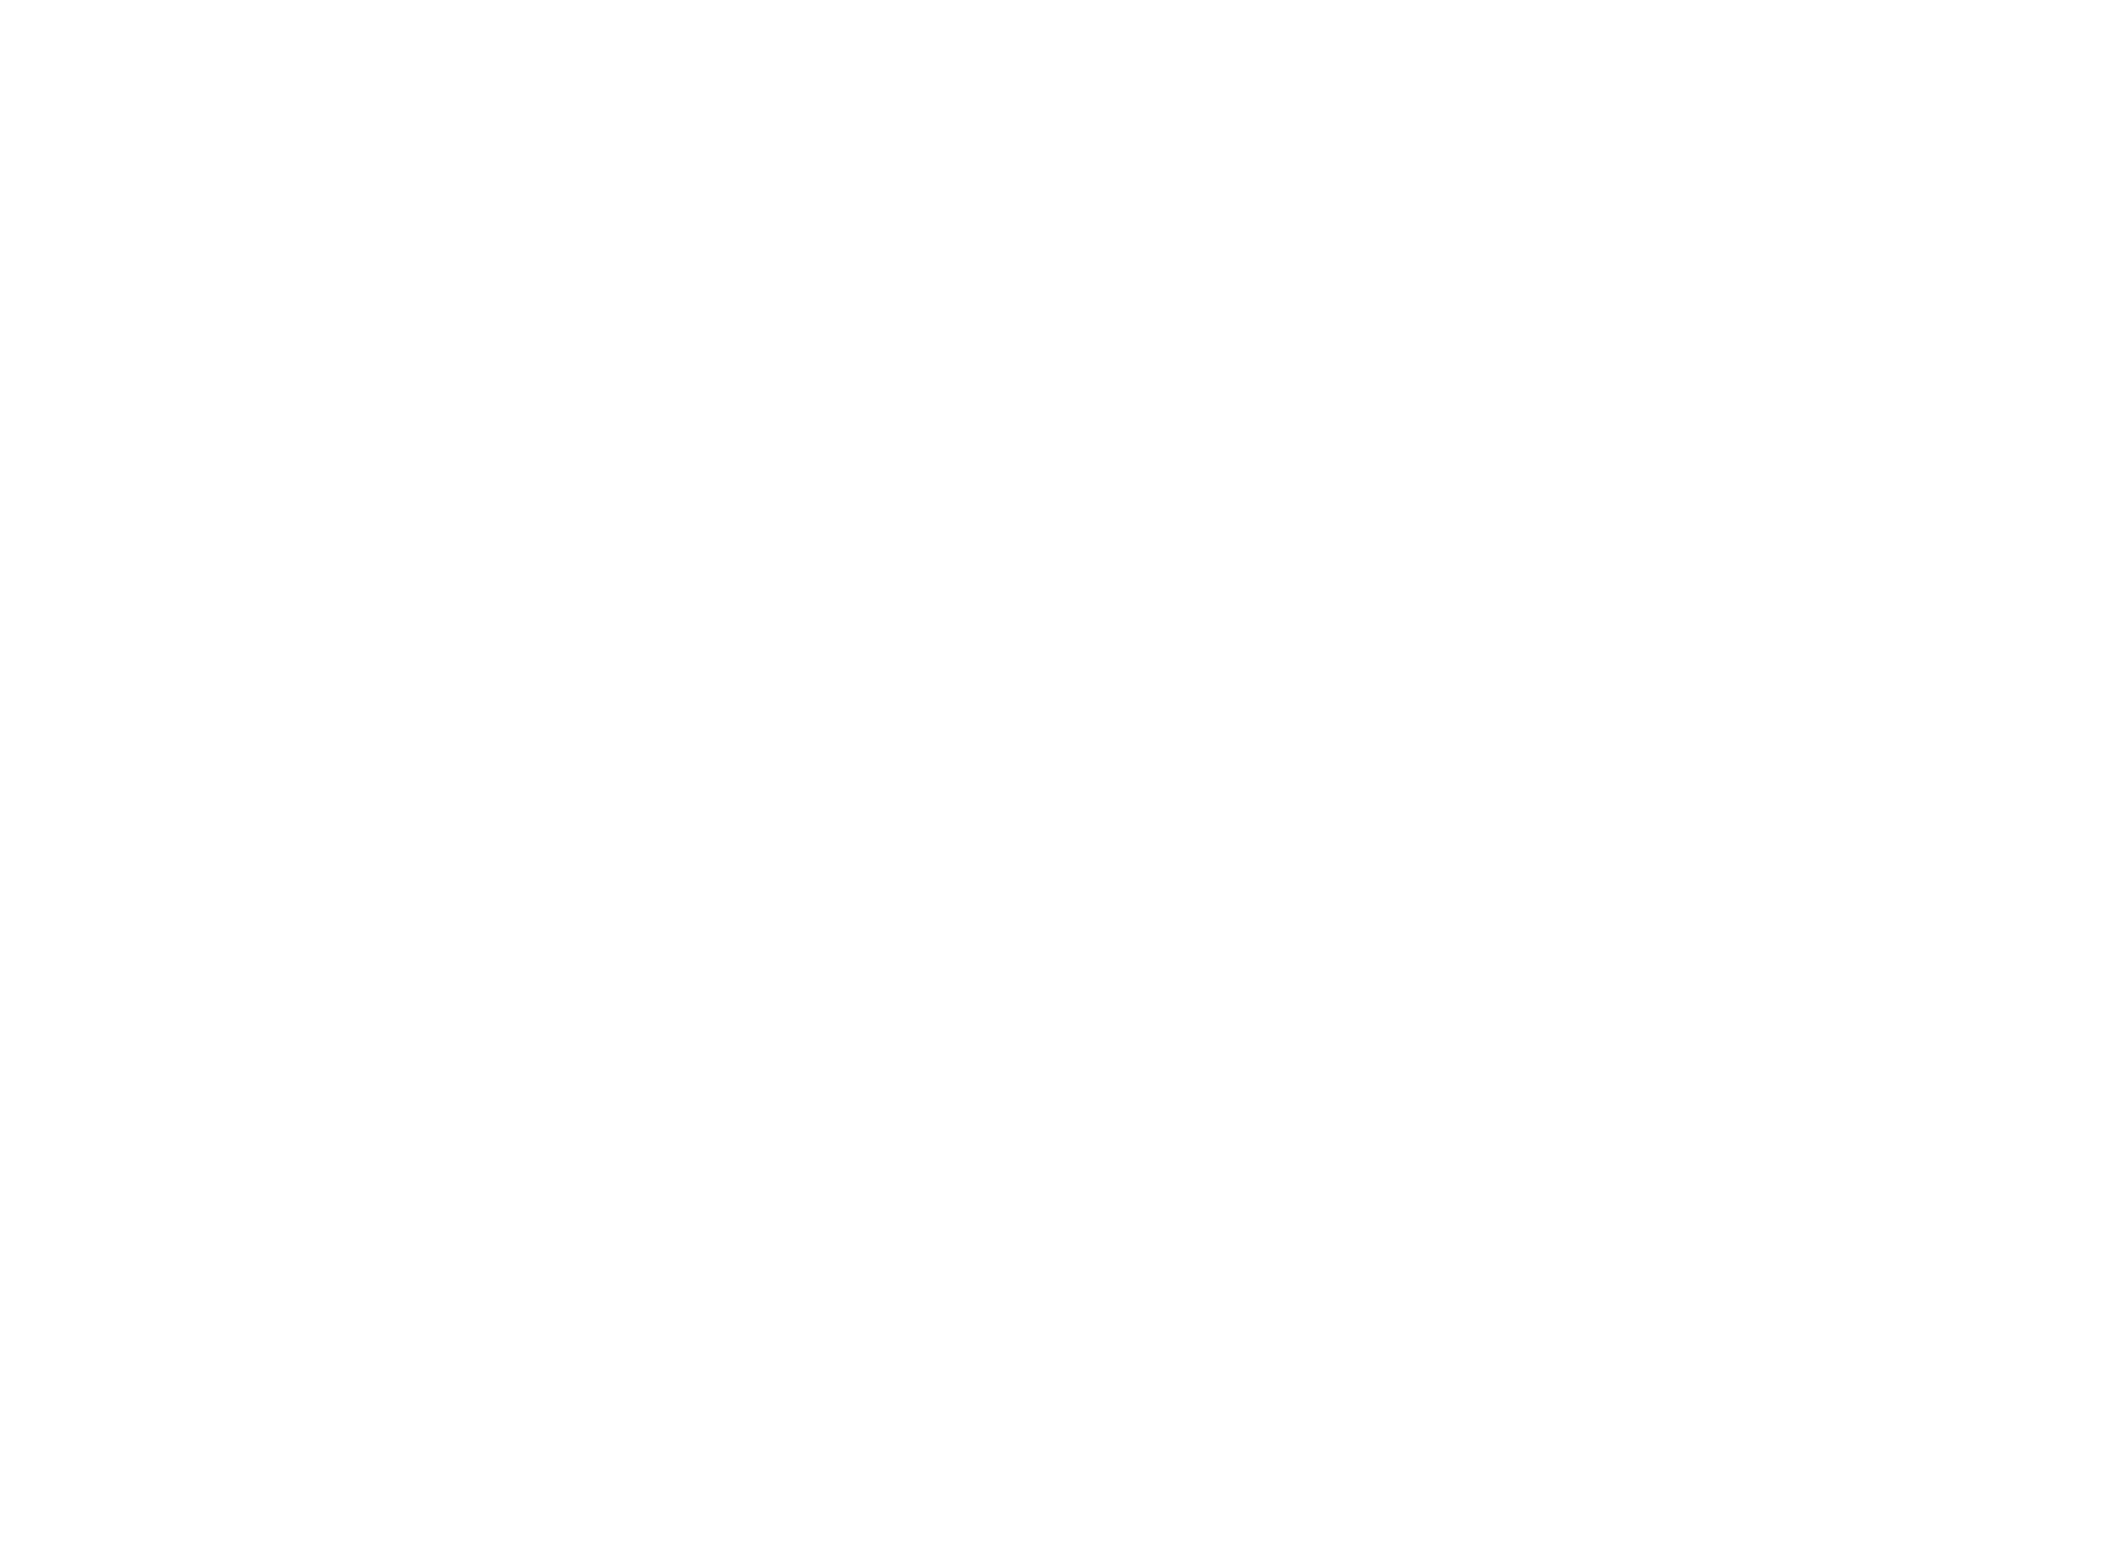 Br v integration of. Handshake clipart conflict